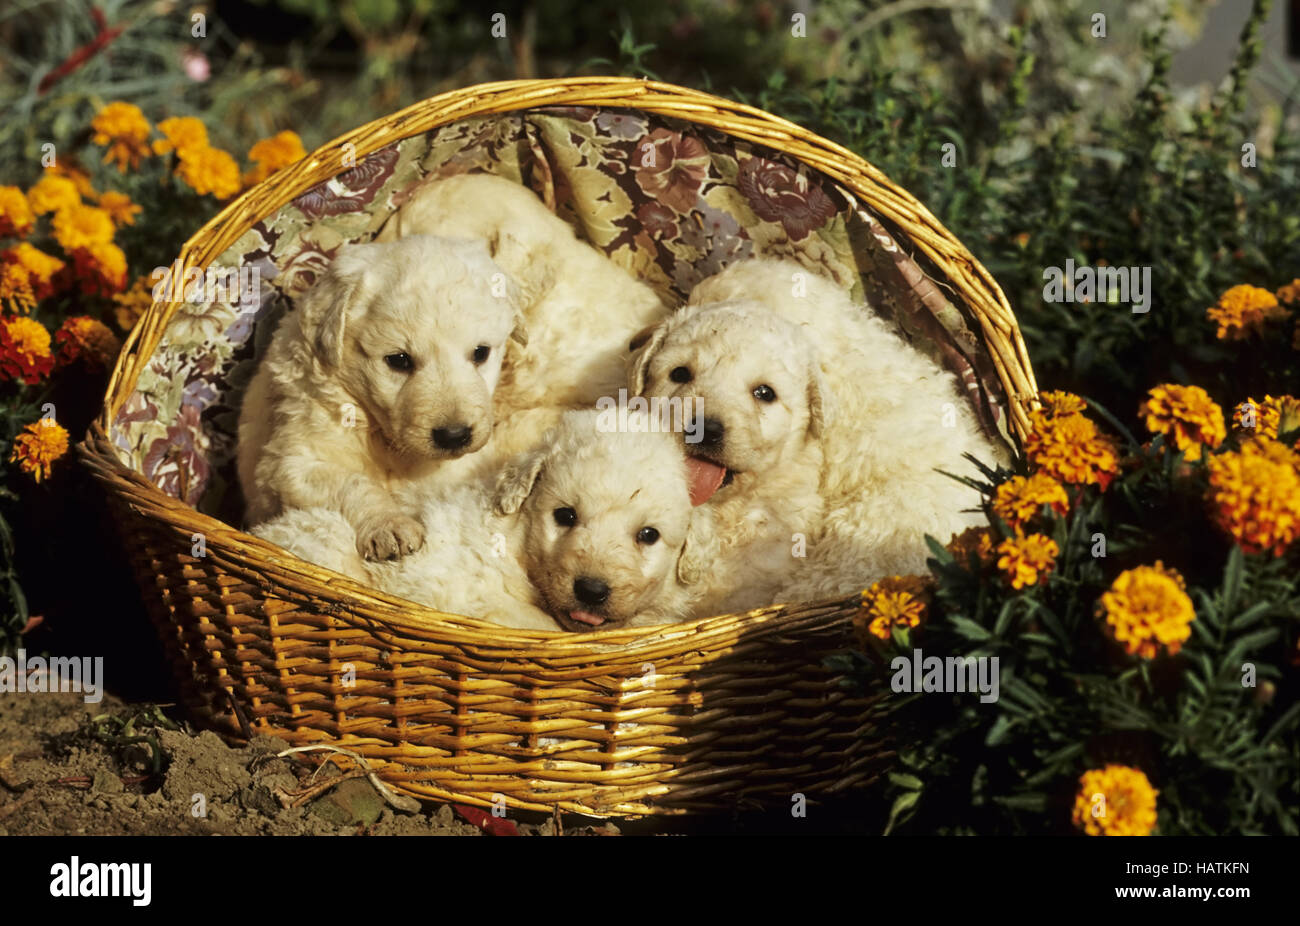 Kuvasz, Hund, dog, welpen, pubs Stock Photo